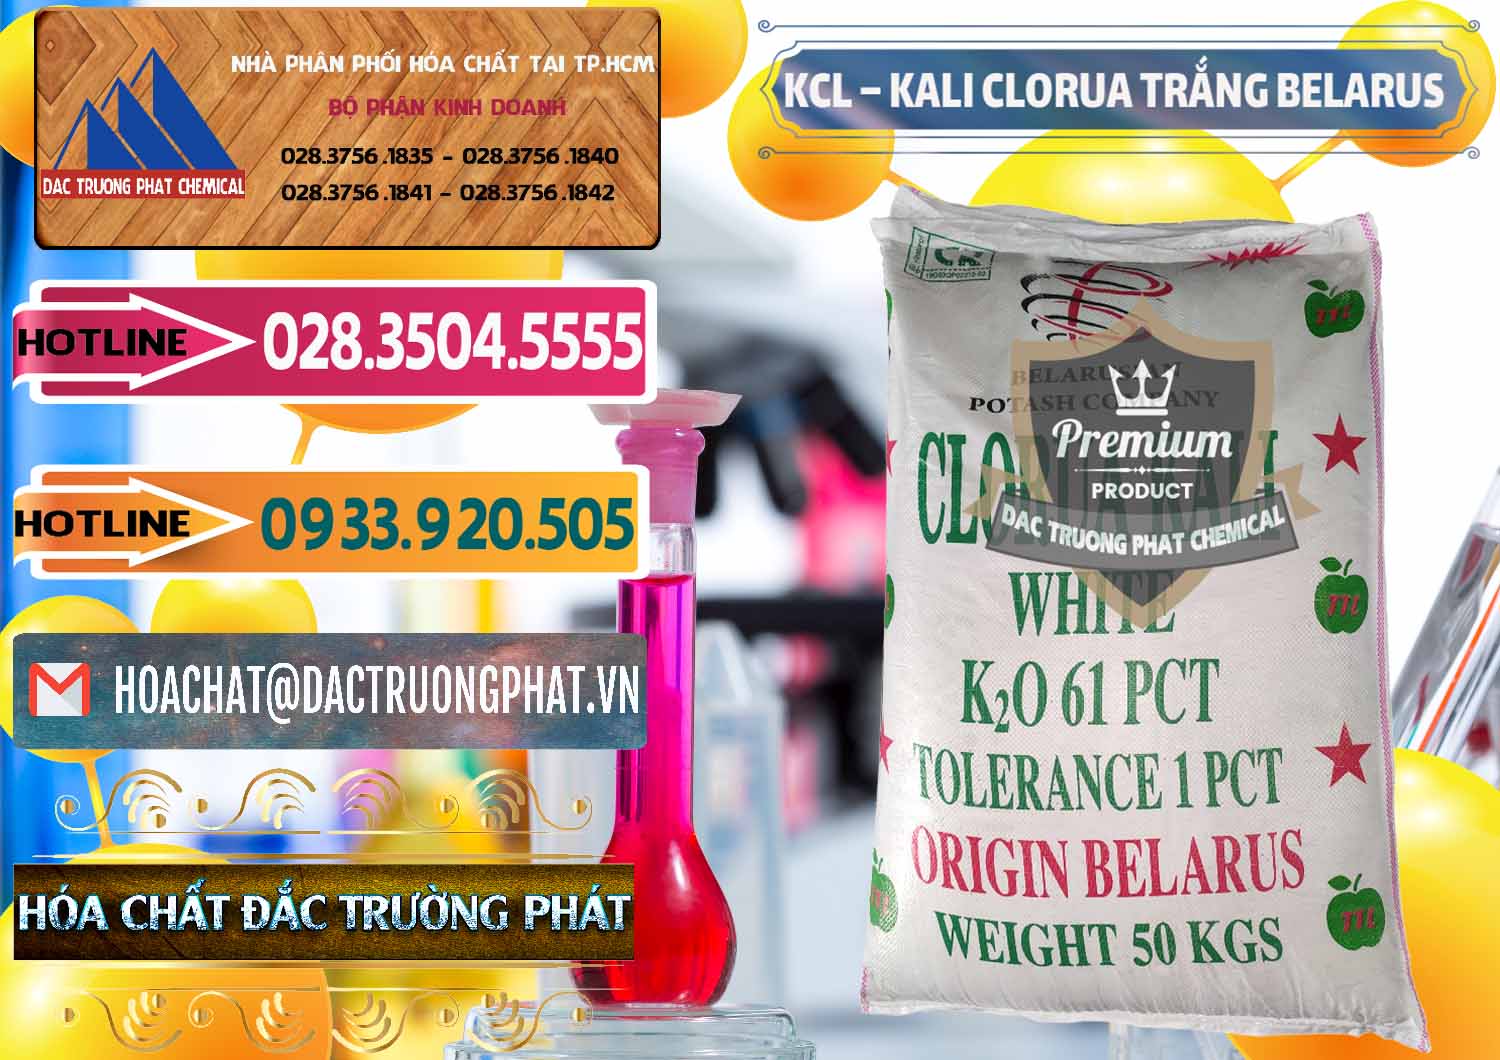 Nhà cung ứng và bán KCL – Kali Clorua Trắng Belarus - 0085 - Nhà phân phối _ cung cấp hóa chất tại TP.HCM - dactruongphat.vn